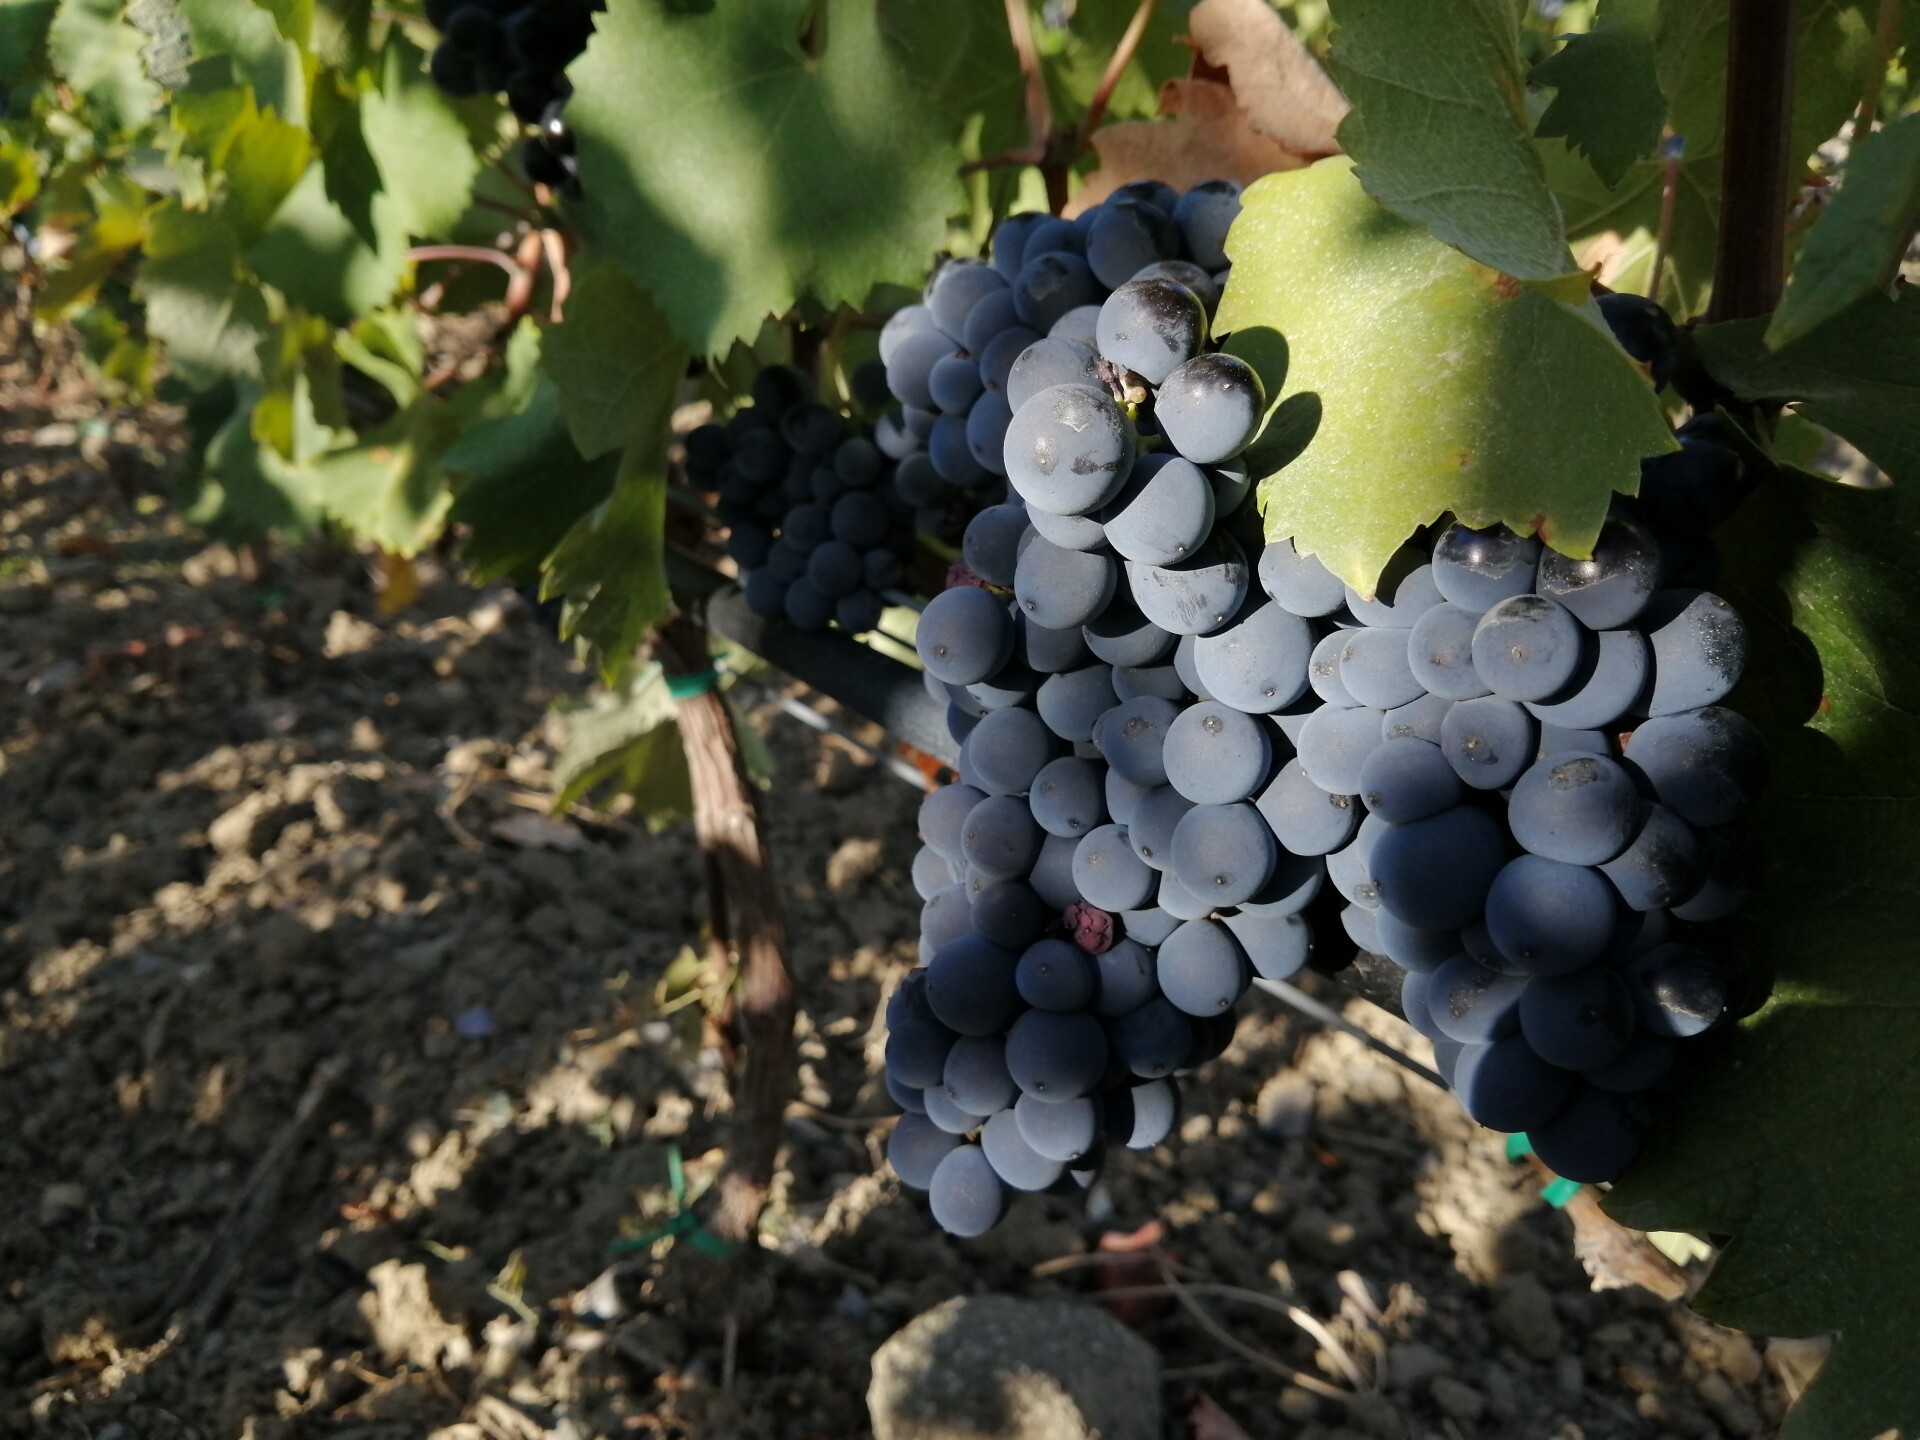 Дагестан планирует создать в республике виноградный питомник